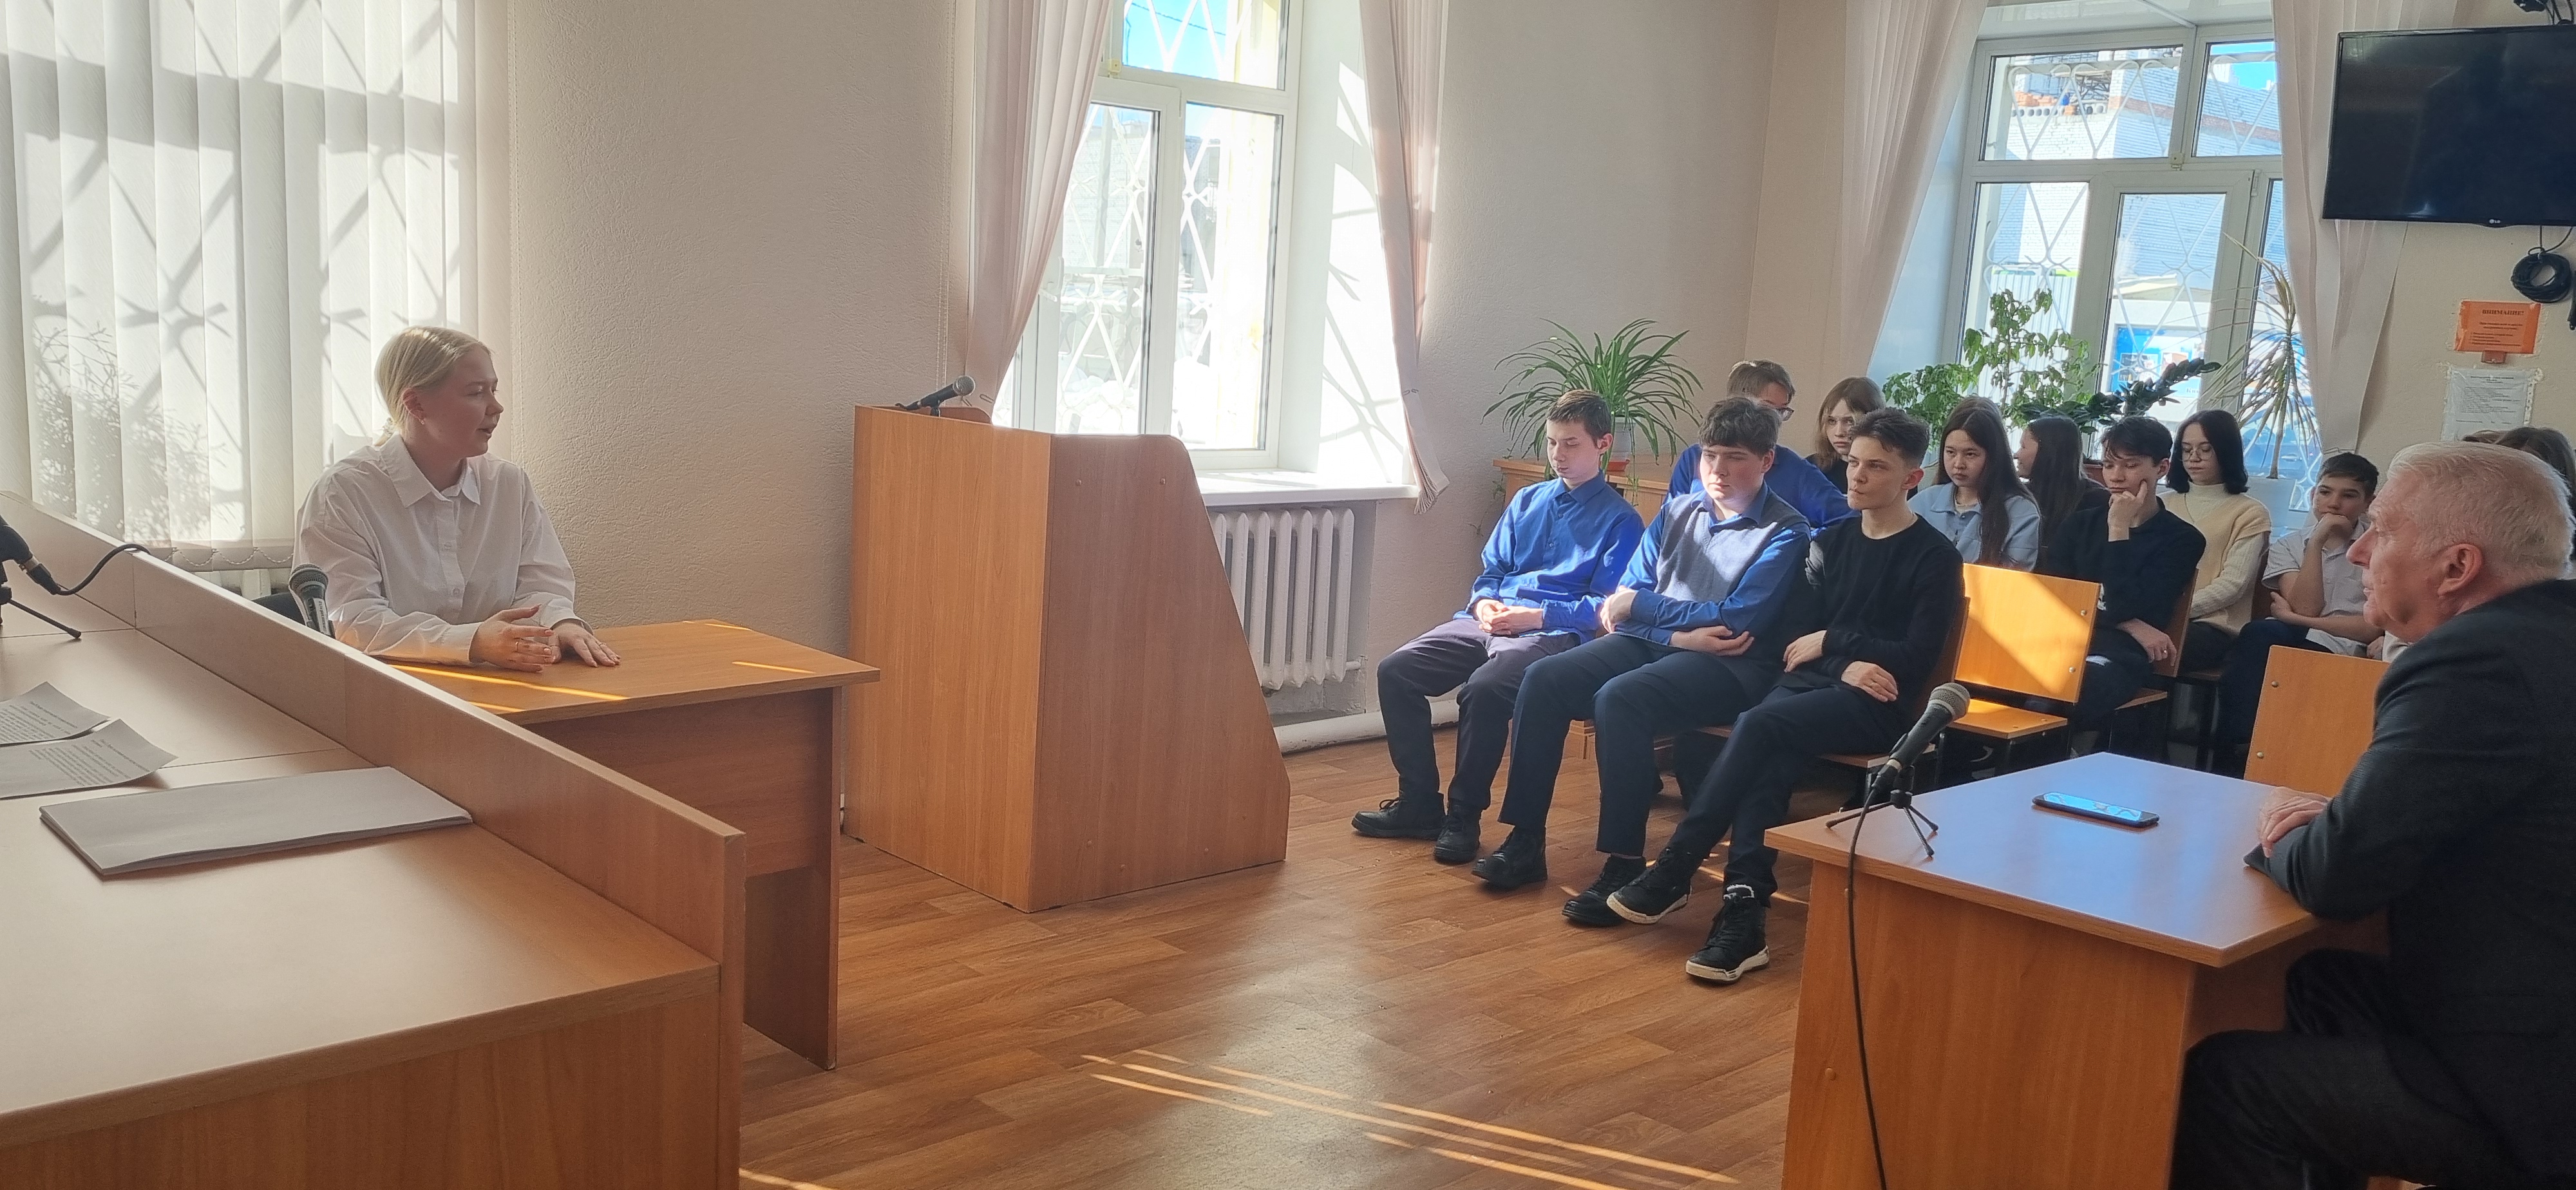 Экскурсия для школьников  в Сорокинском районном суде 